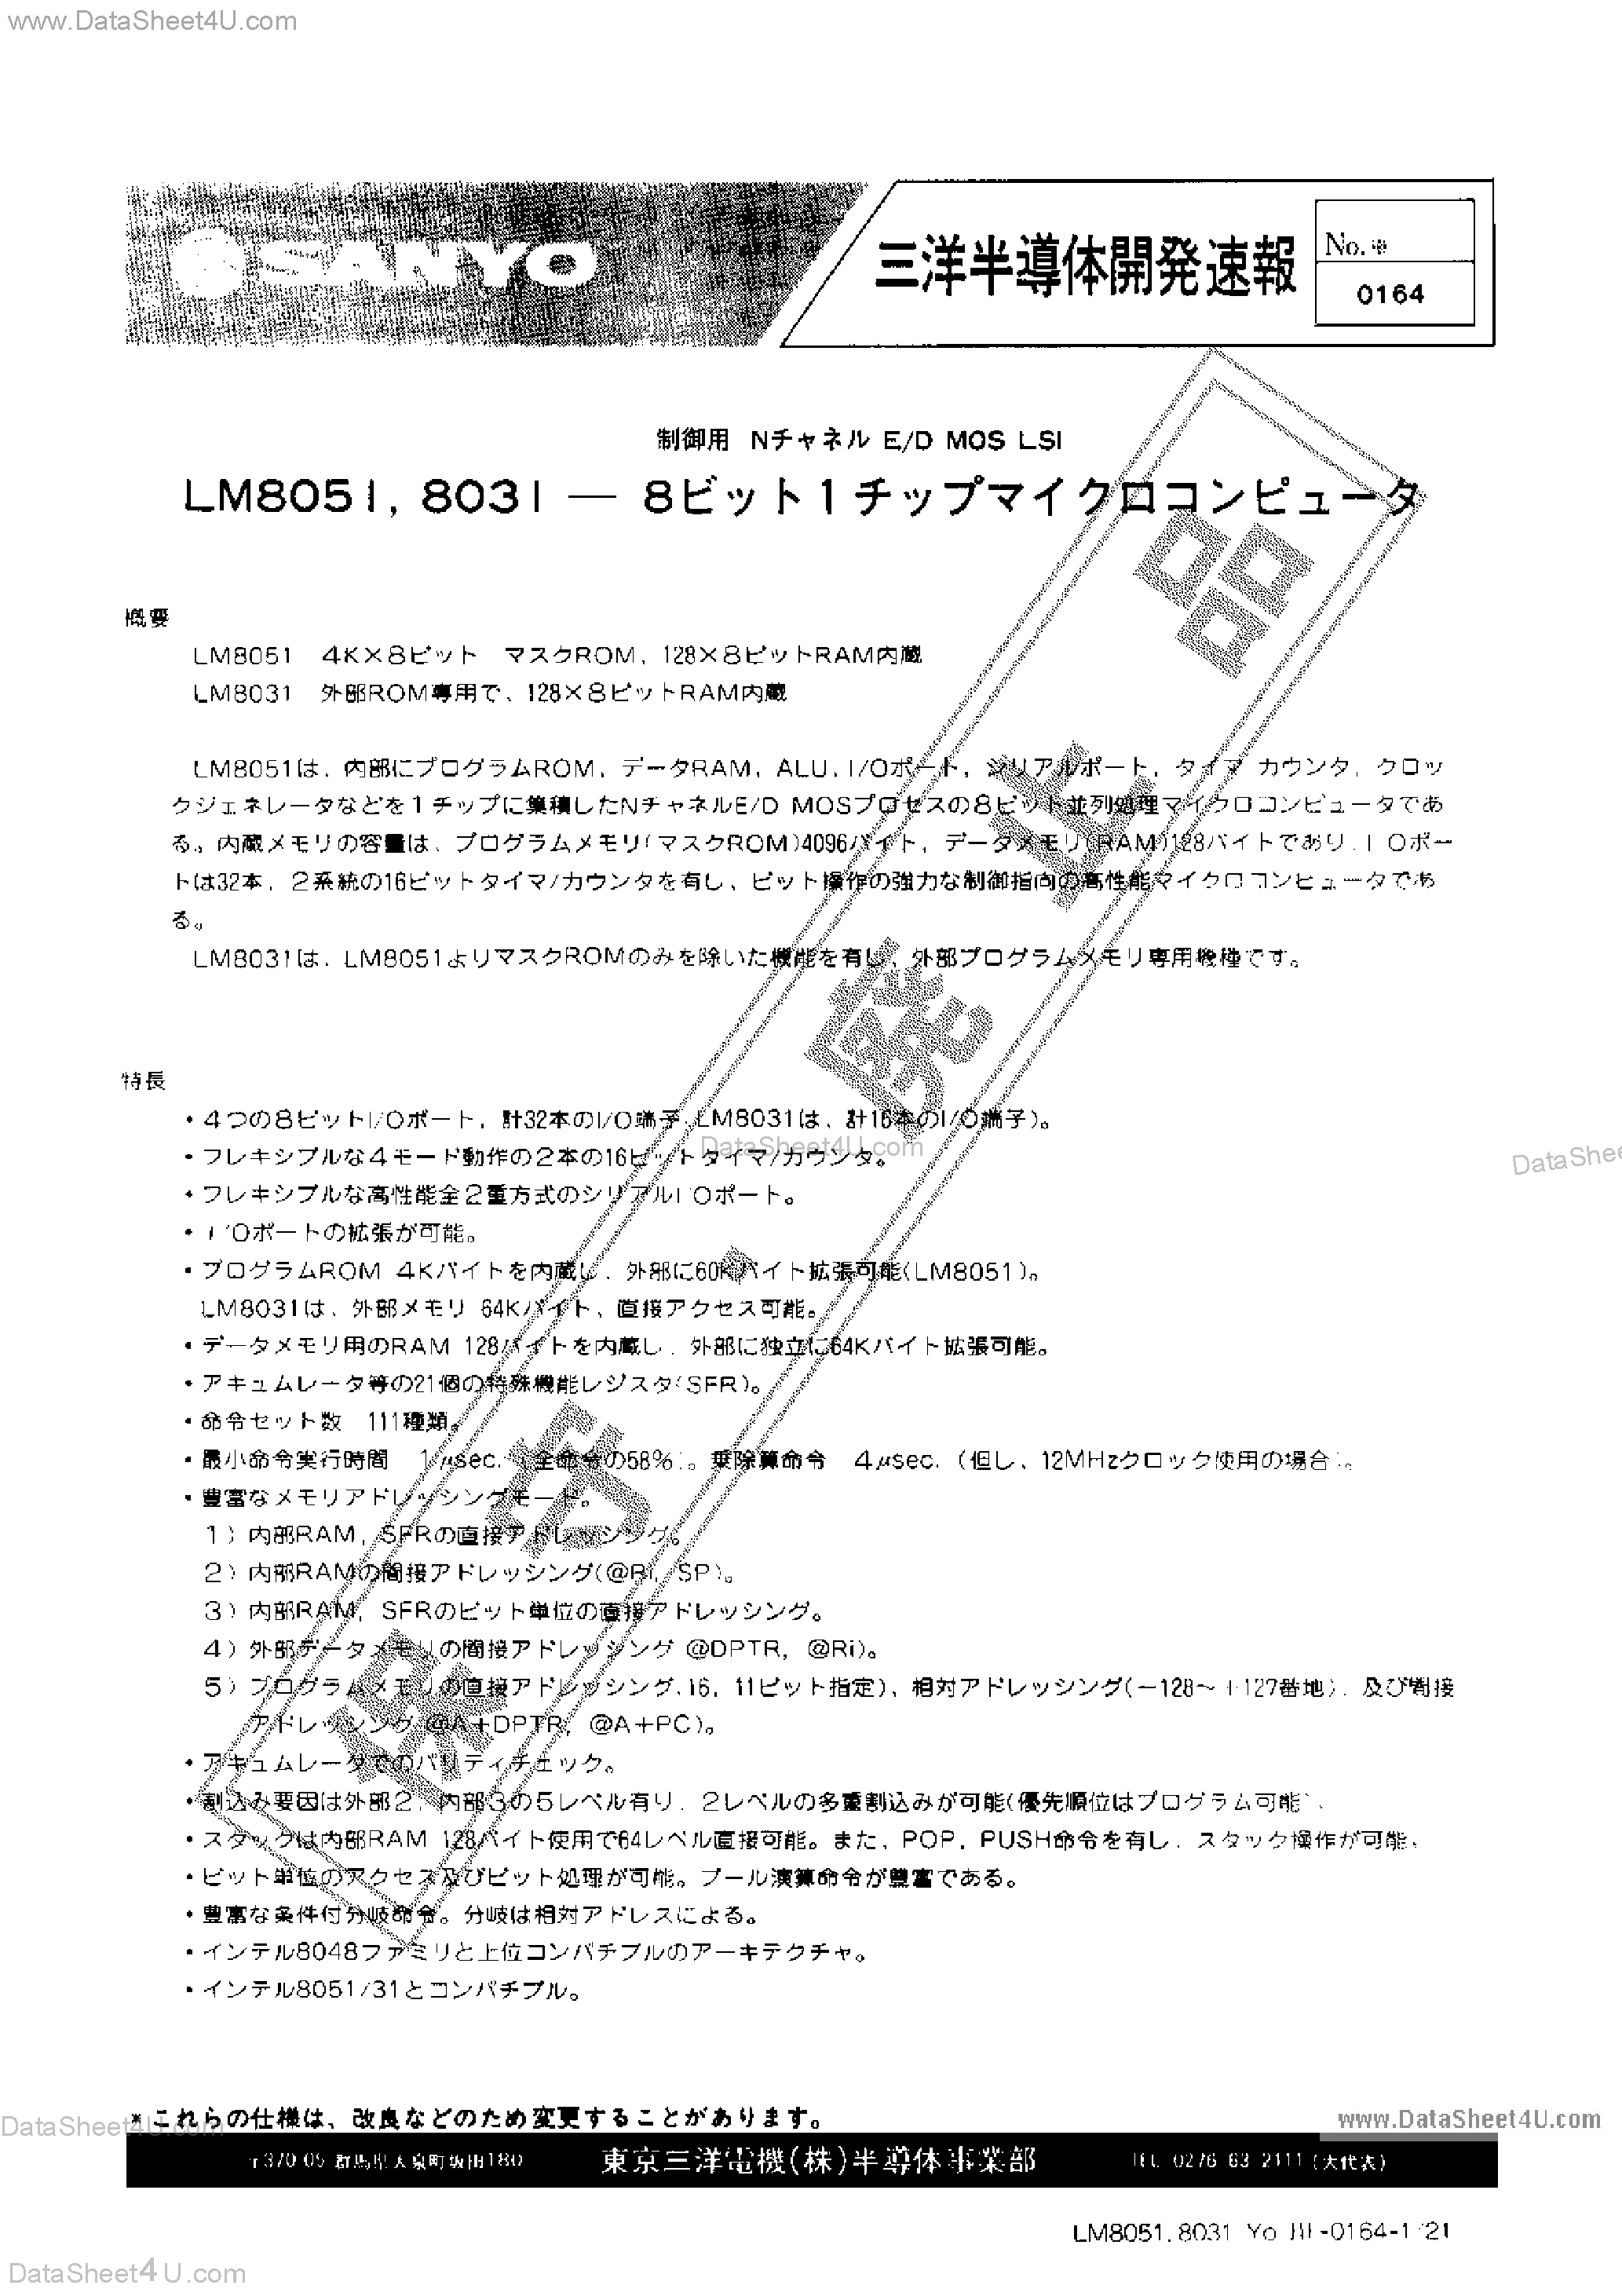 Даташит LM8031 - (LM8031 / LM8051) E/D MOS LSI страница 1